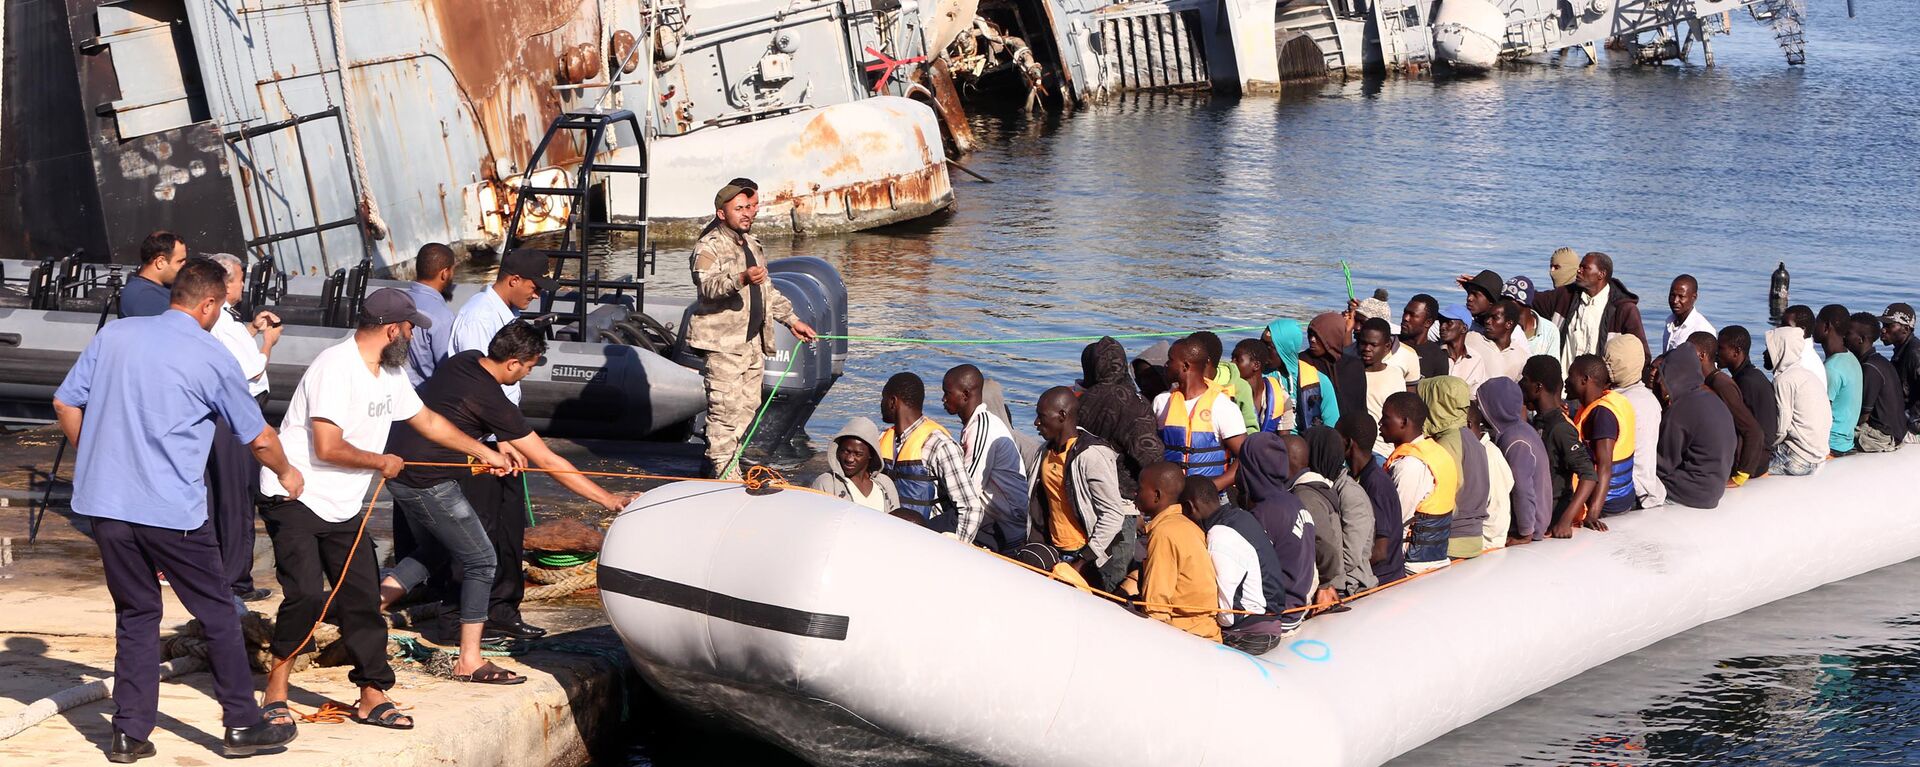  خفر السواحل الليبي يقوم بسحب قارب يحمل مهاجرين أفارقة، تم إنقاذهم أثناء محاولتهم الوصول إلى أوروبا بطريقة غير شرعية، في قاعدة بحرية بالقرب من العاصمة طرابلس في 29 سبتمبر/ أيلول 2015. - سبوتنيك عربي, 1920, 12.06.2023